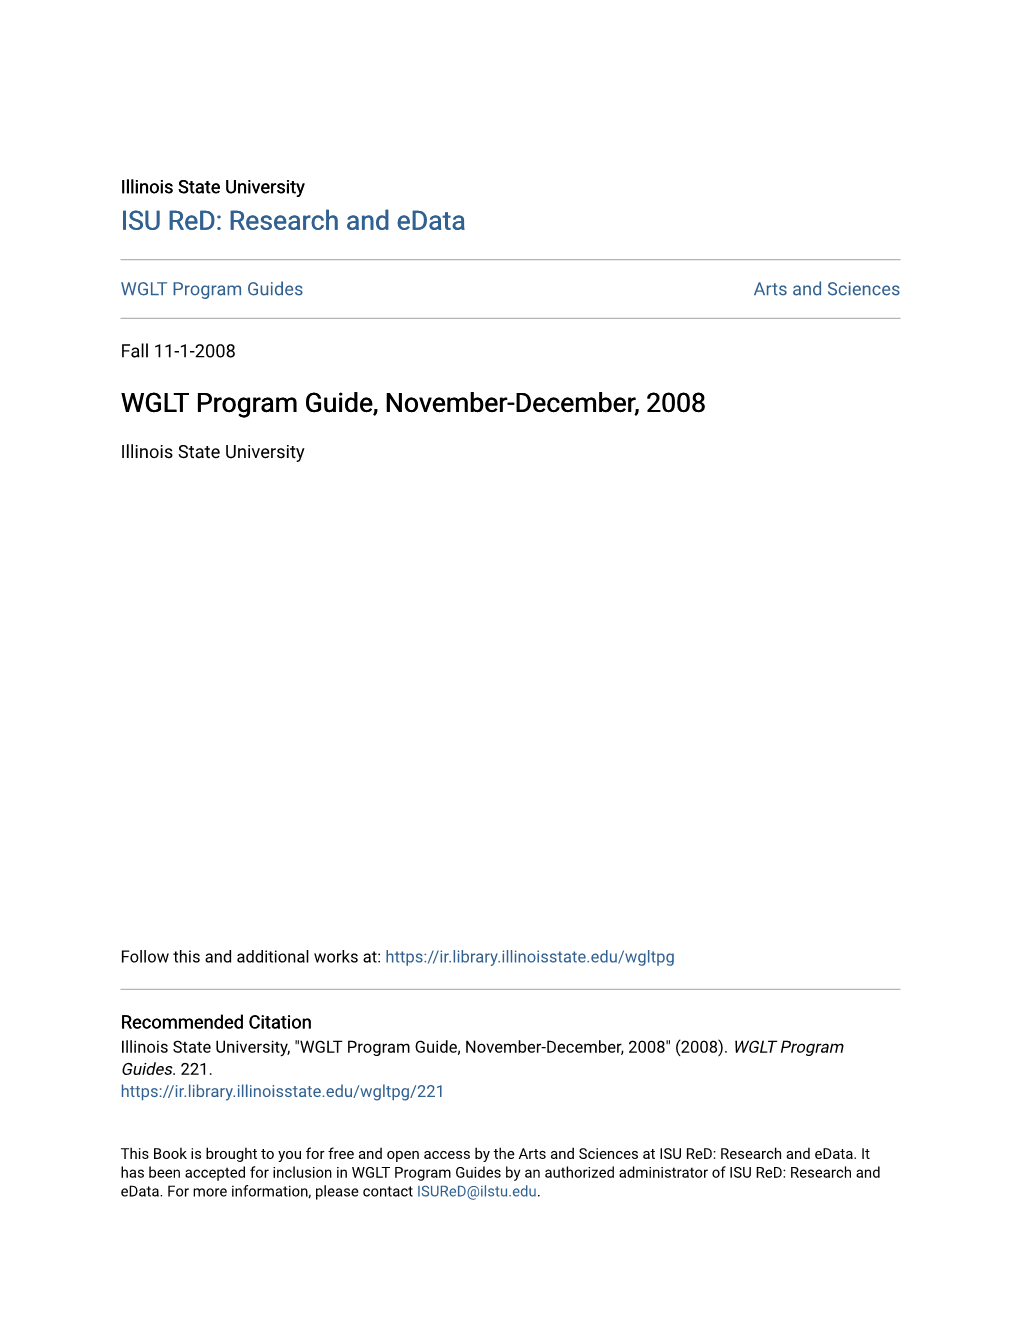 WGLT Program Guide, November-December, 2008